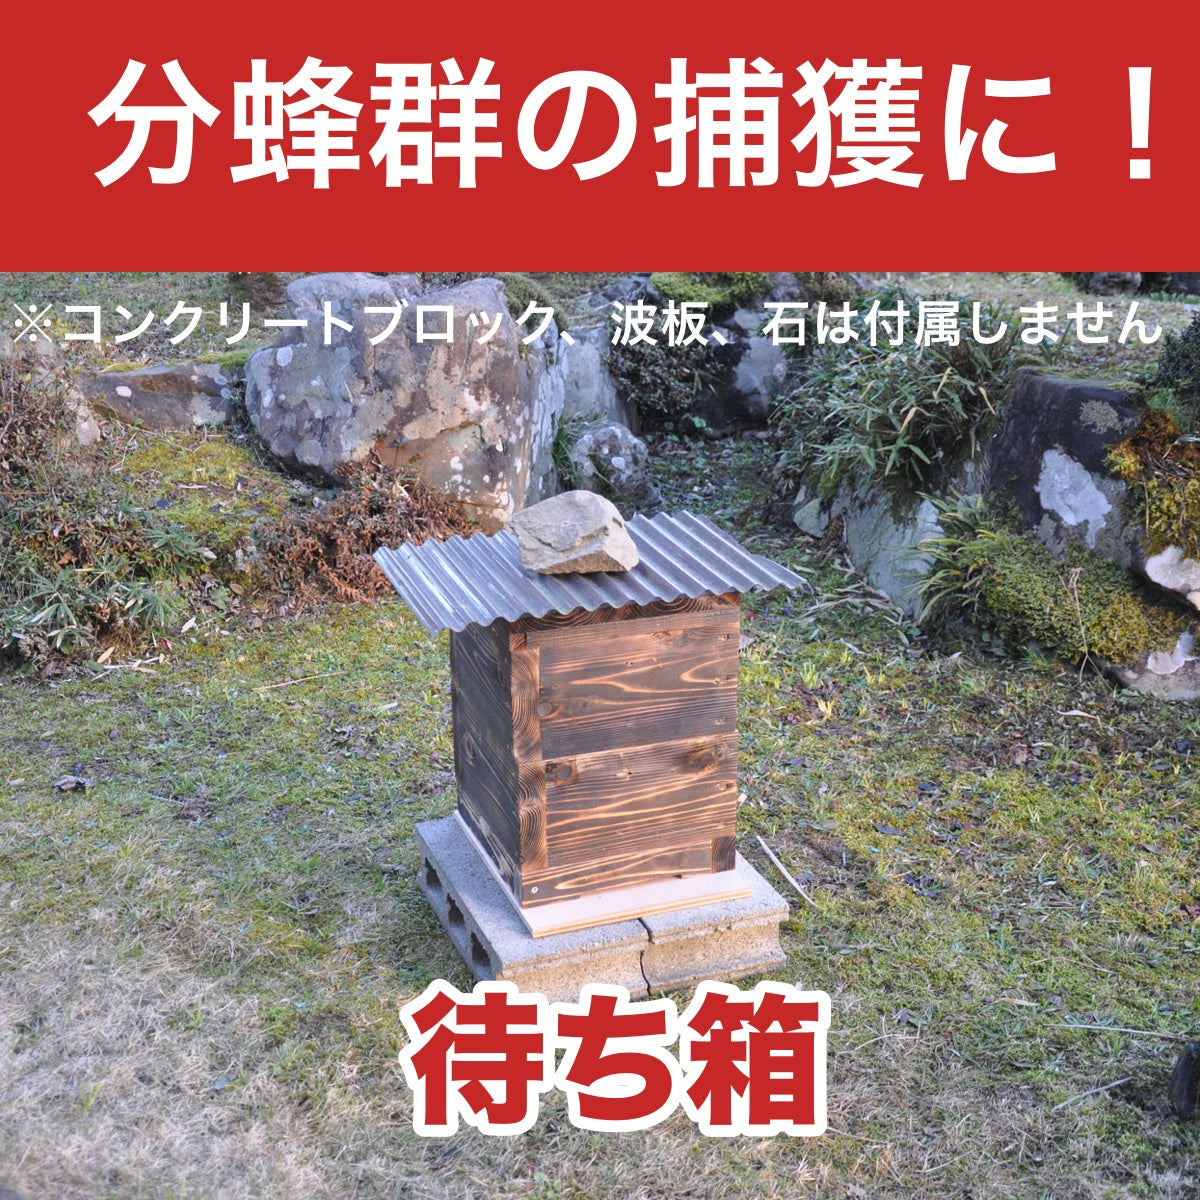 日本蜜蜂重箱式待ち箱(巣箱)3段箱 - 虫かご・飼育ケース